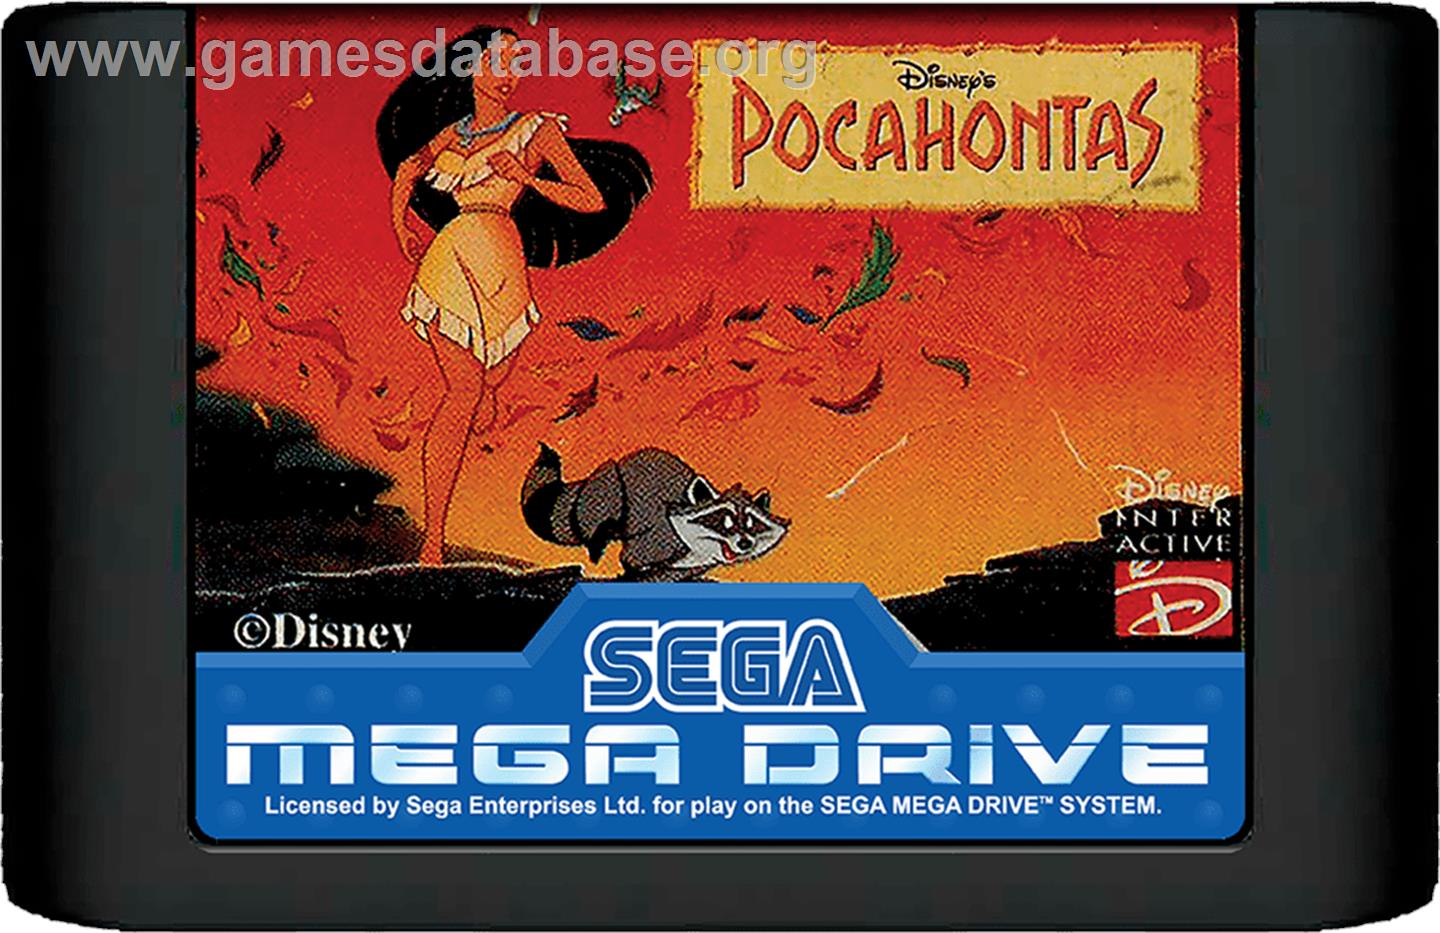 Pocahontas - Sega Genesis - Artwork - Cartridge